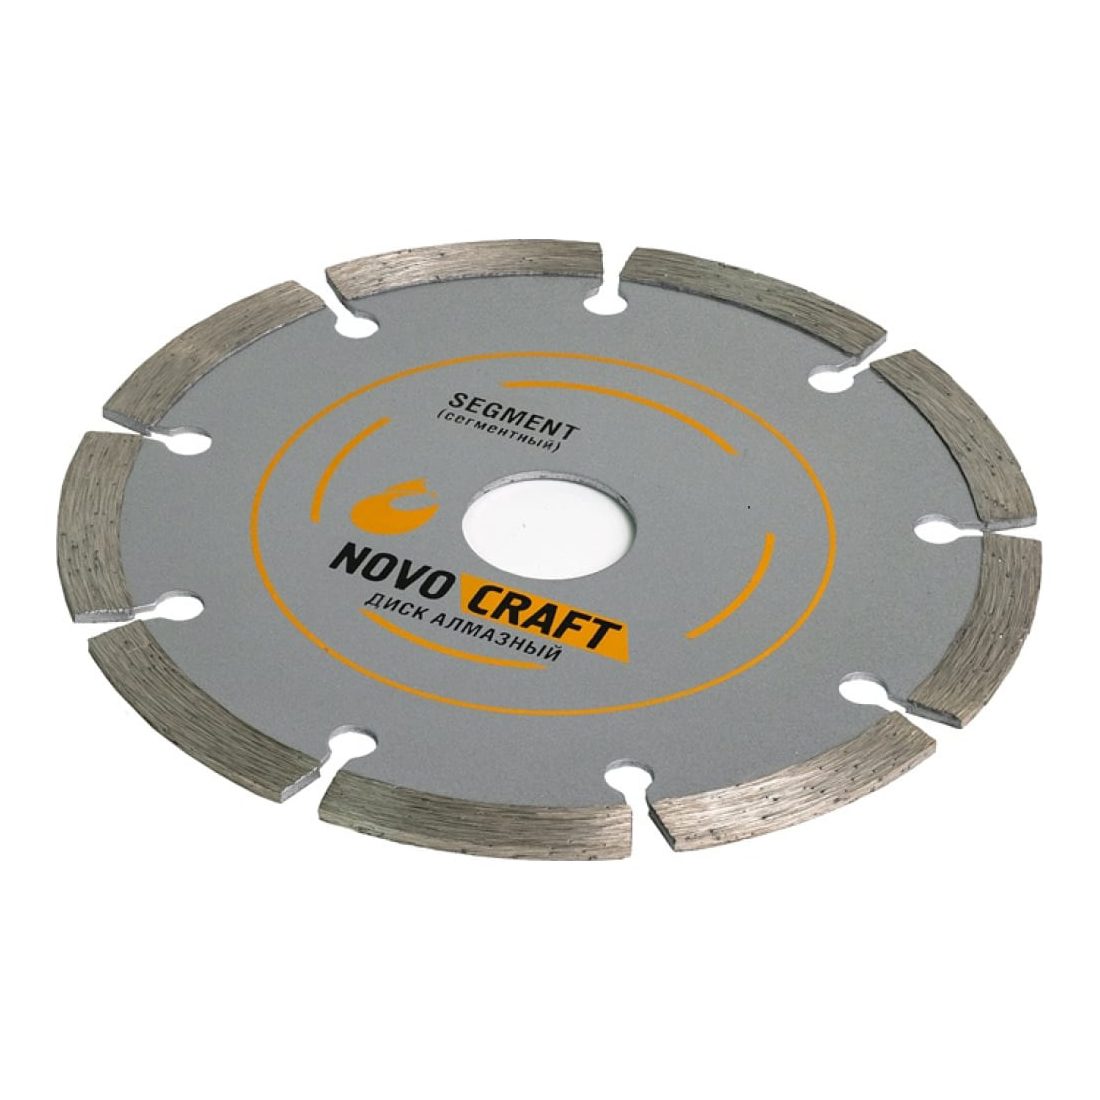 Диск алмазный Novocraft SEGMENT отрезной по бетону 180х22,23х2,4 мм отрезной алмазный диск по керамике novocraft